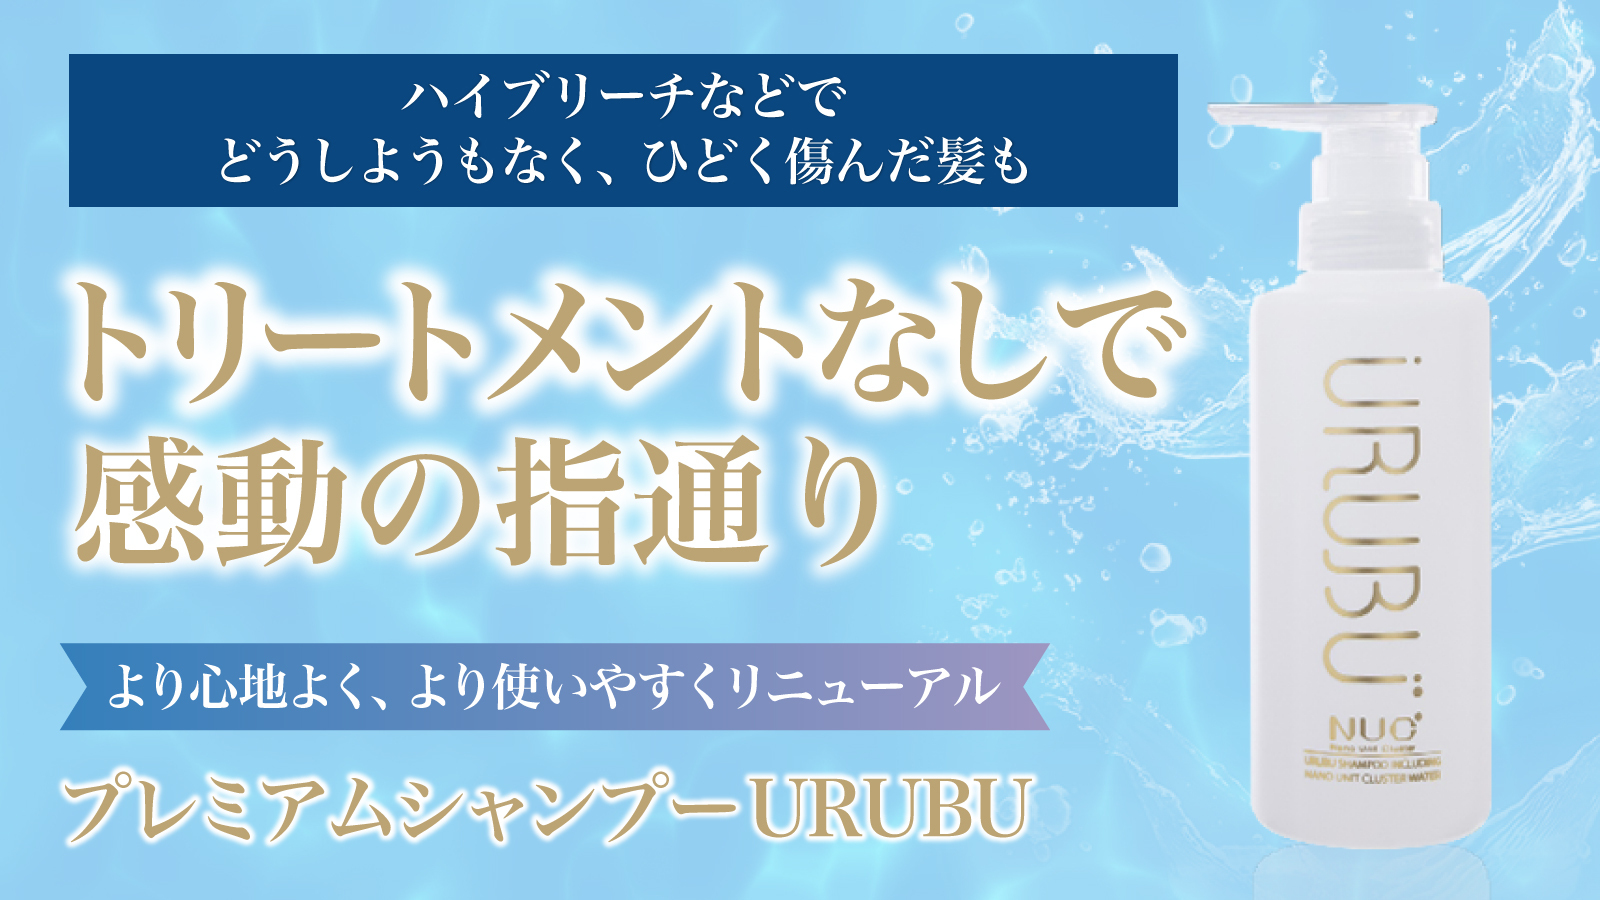 独自技術ナノユニットクラスター搭載のプレミアムシャンプー
「URUBU」をMakuakeにて4/12より先行発売